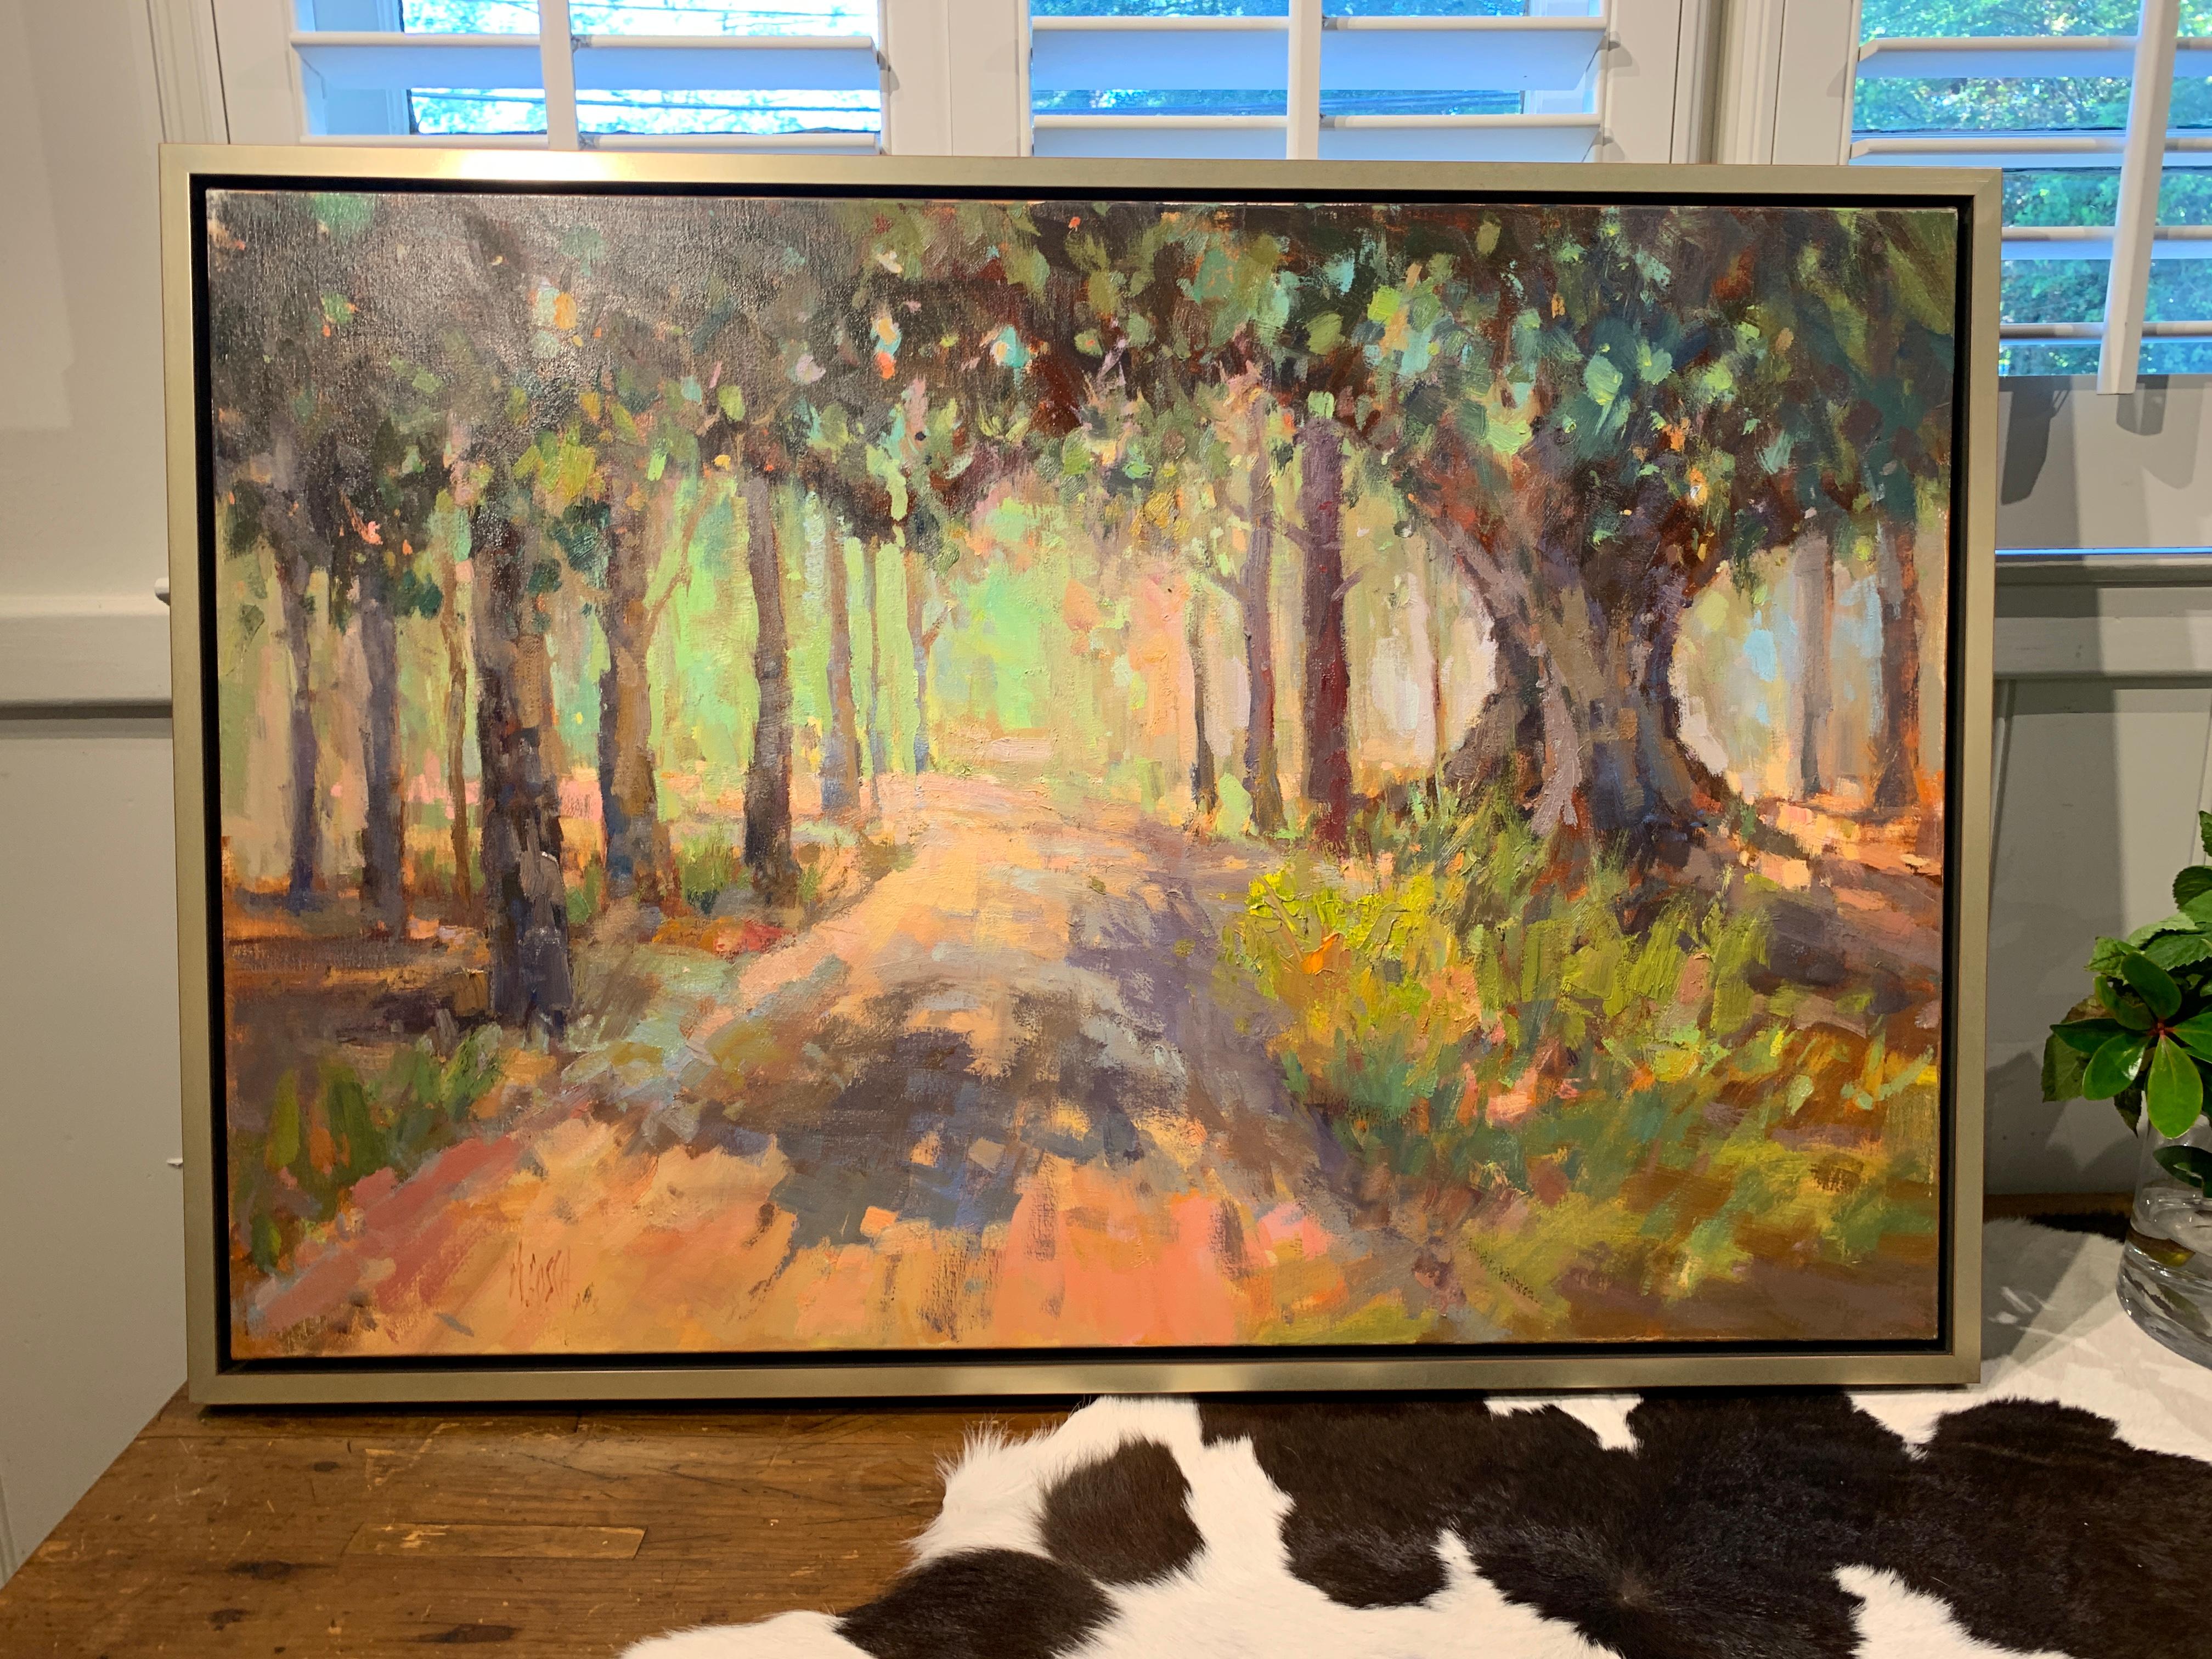 Southern Pines von Millie Gosch, gerahmtes impressionistisches Landschaftsgemälde 2